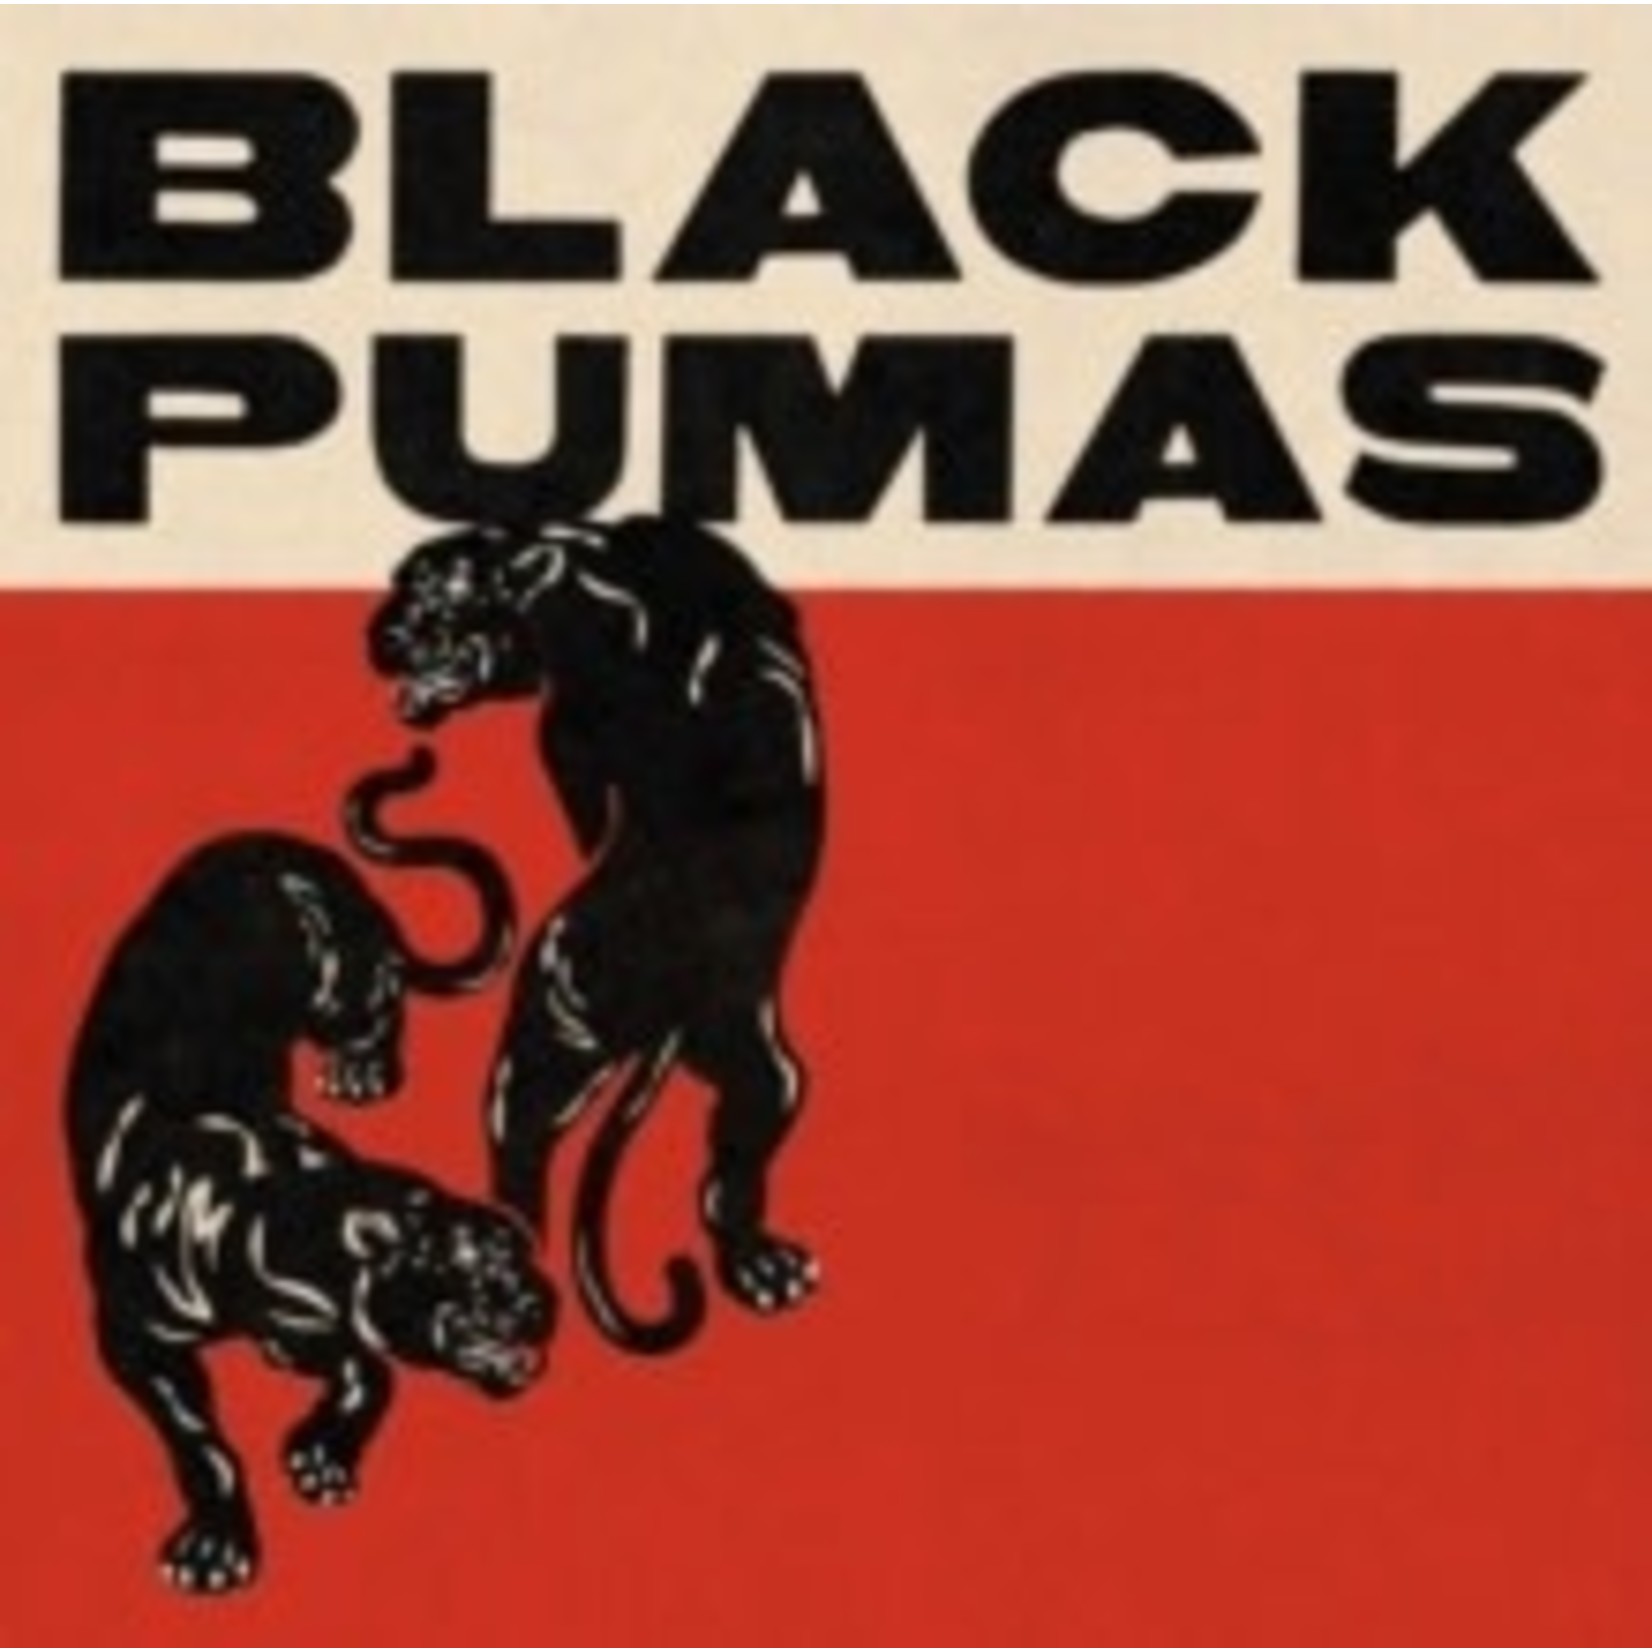 Black Pumas - Black Pumas (Dlx) [2CD]